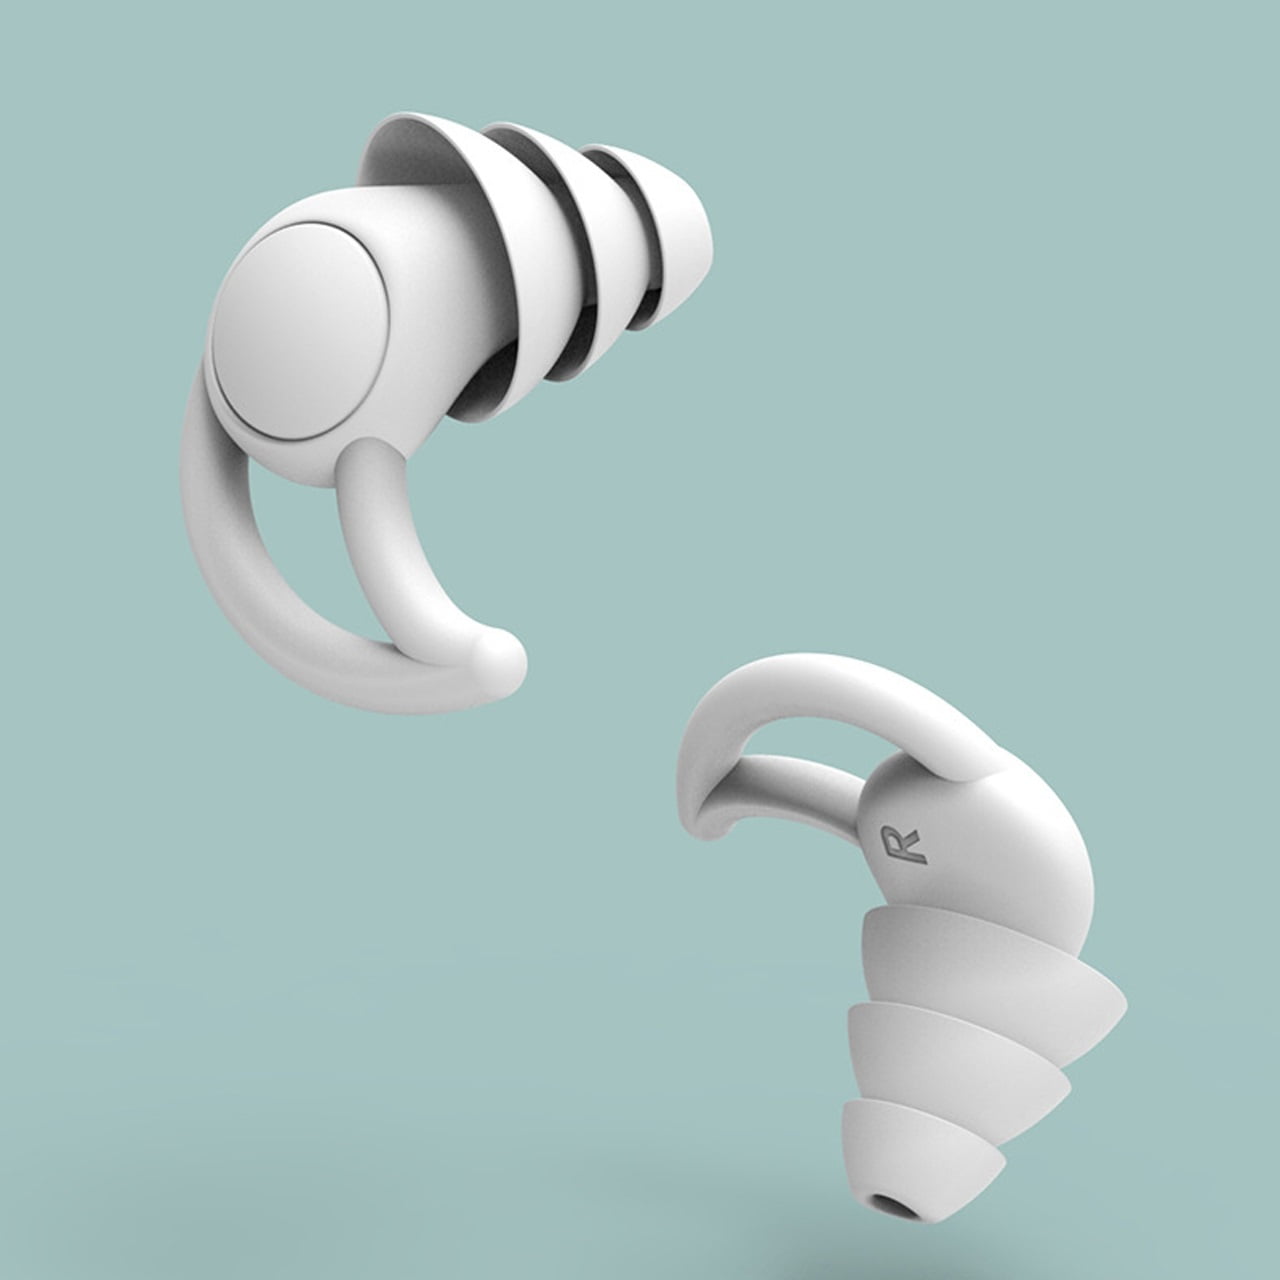 earplugs work sleep disorder 2x Ear Plugs in Box Earplugs Ear 